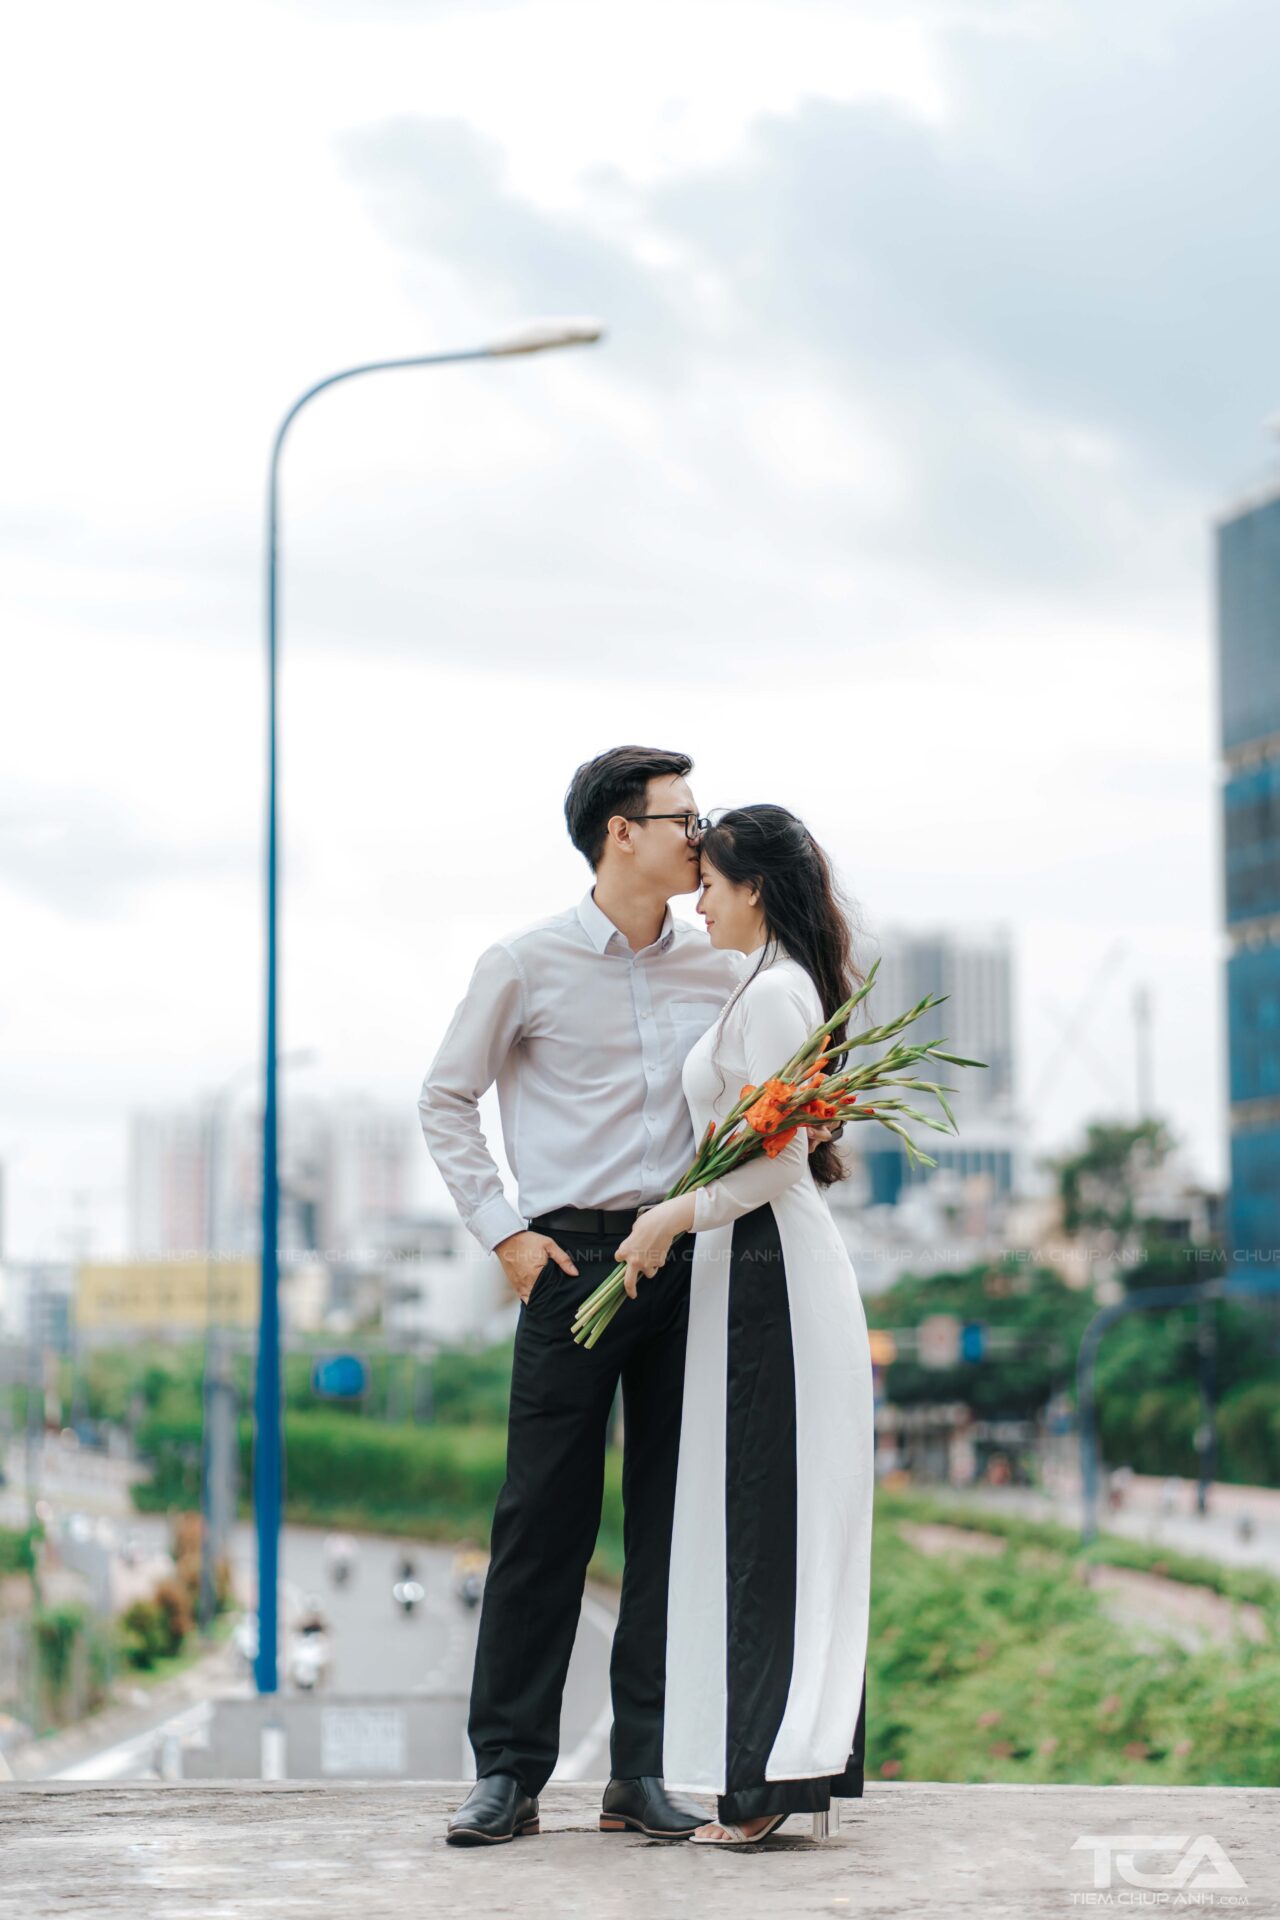 chụp ảnh cưới với áo dài trắng truyền thống Việt Nam